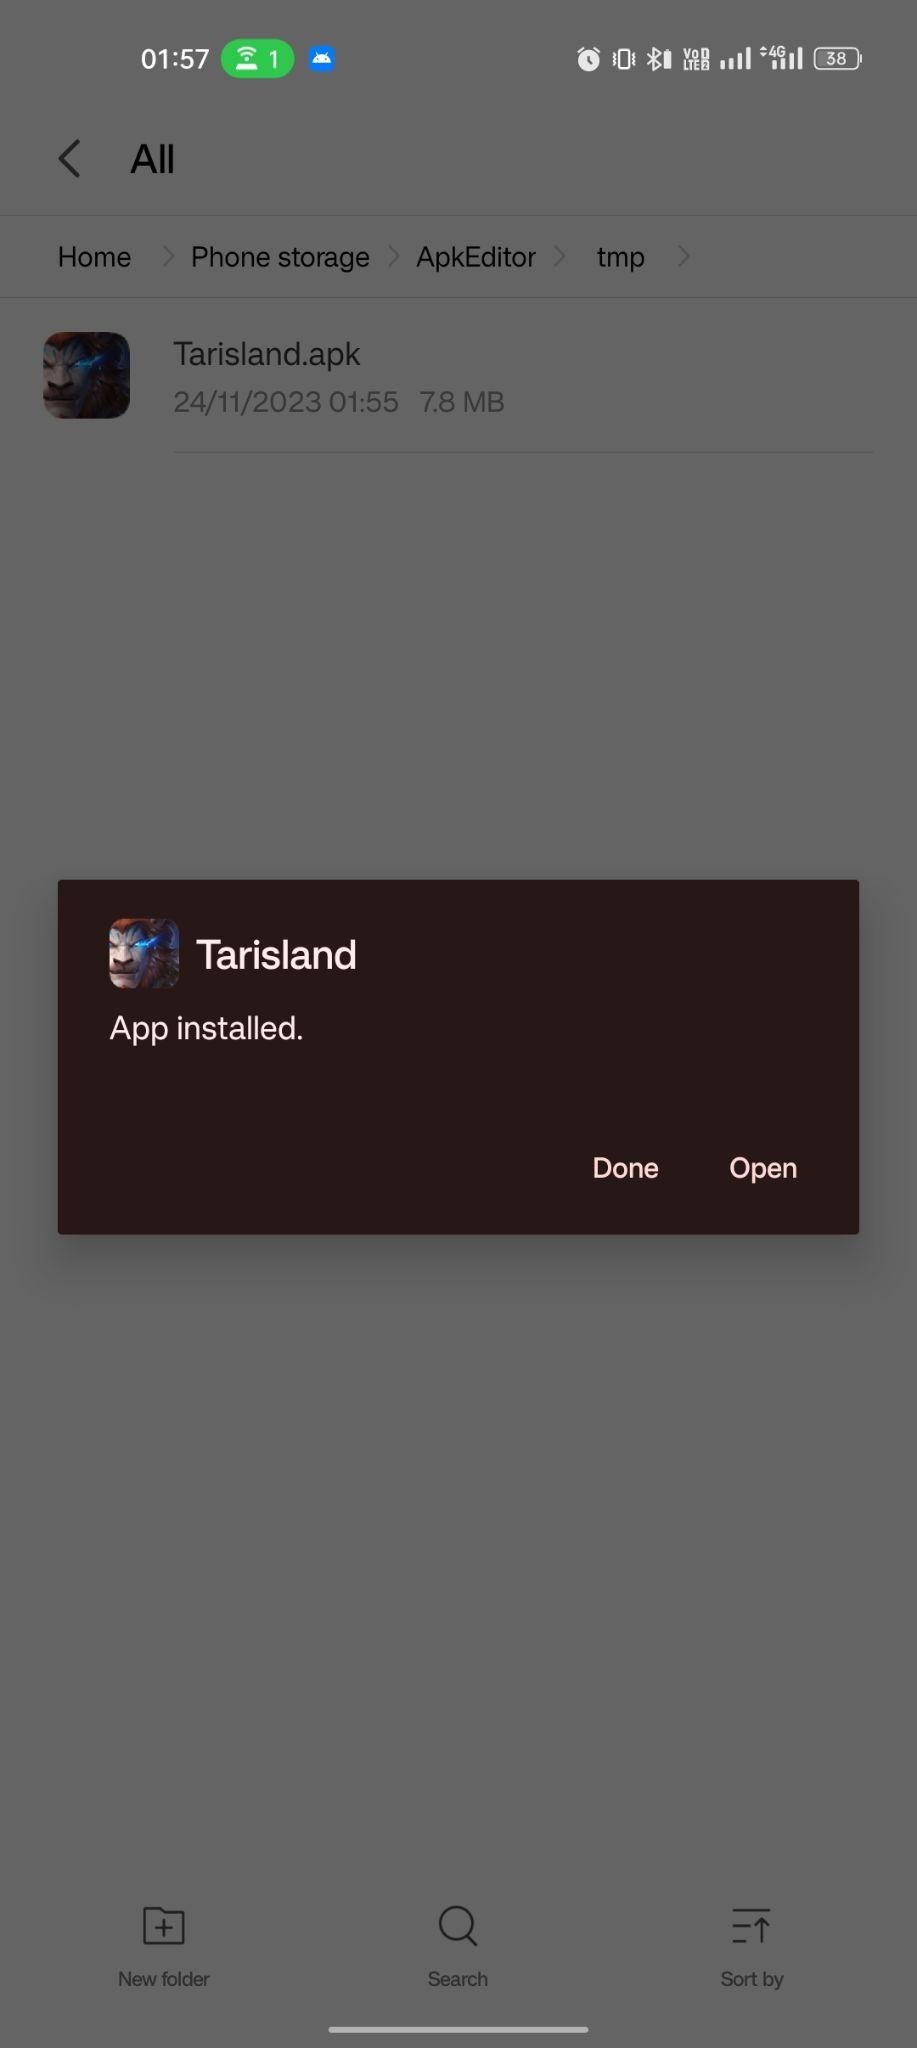 Tarisland apk installed